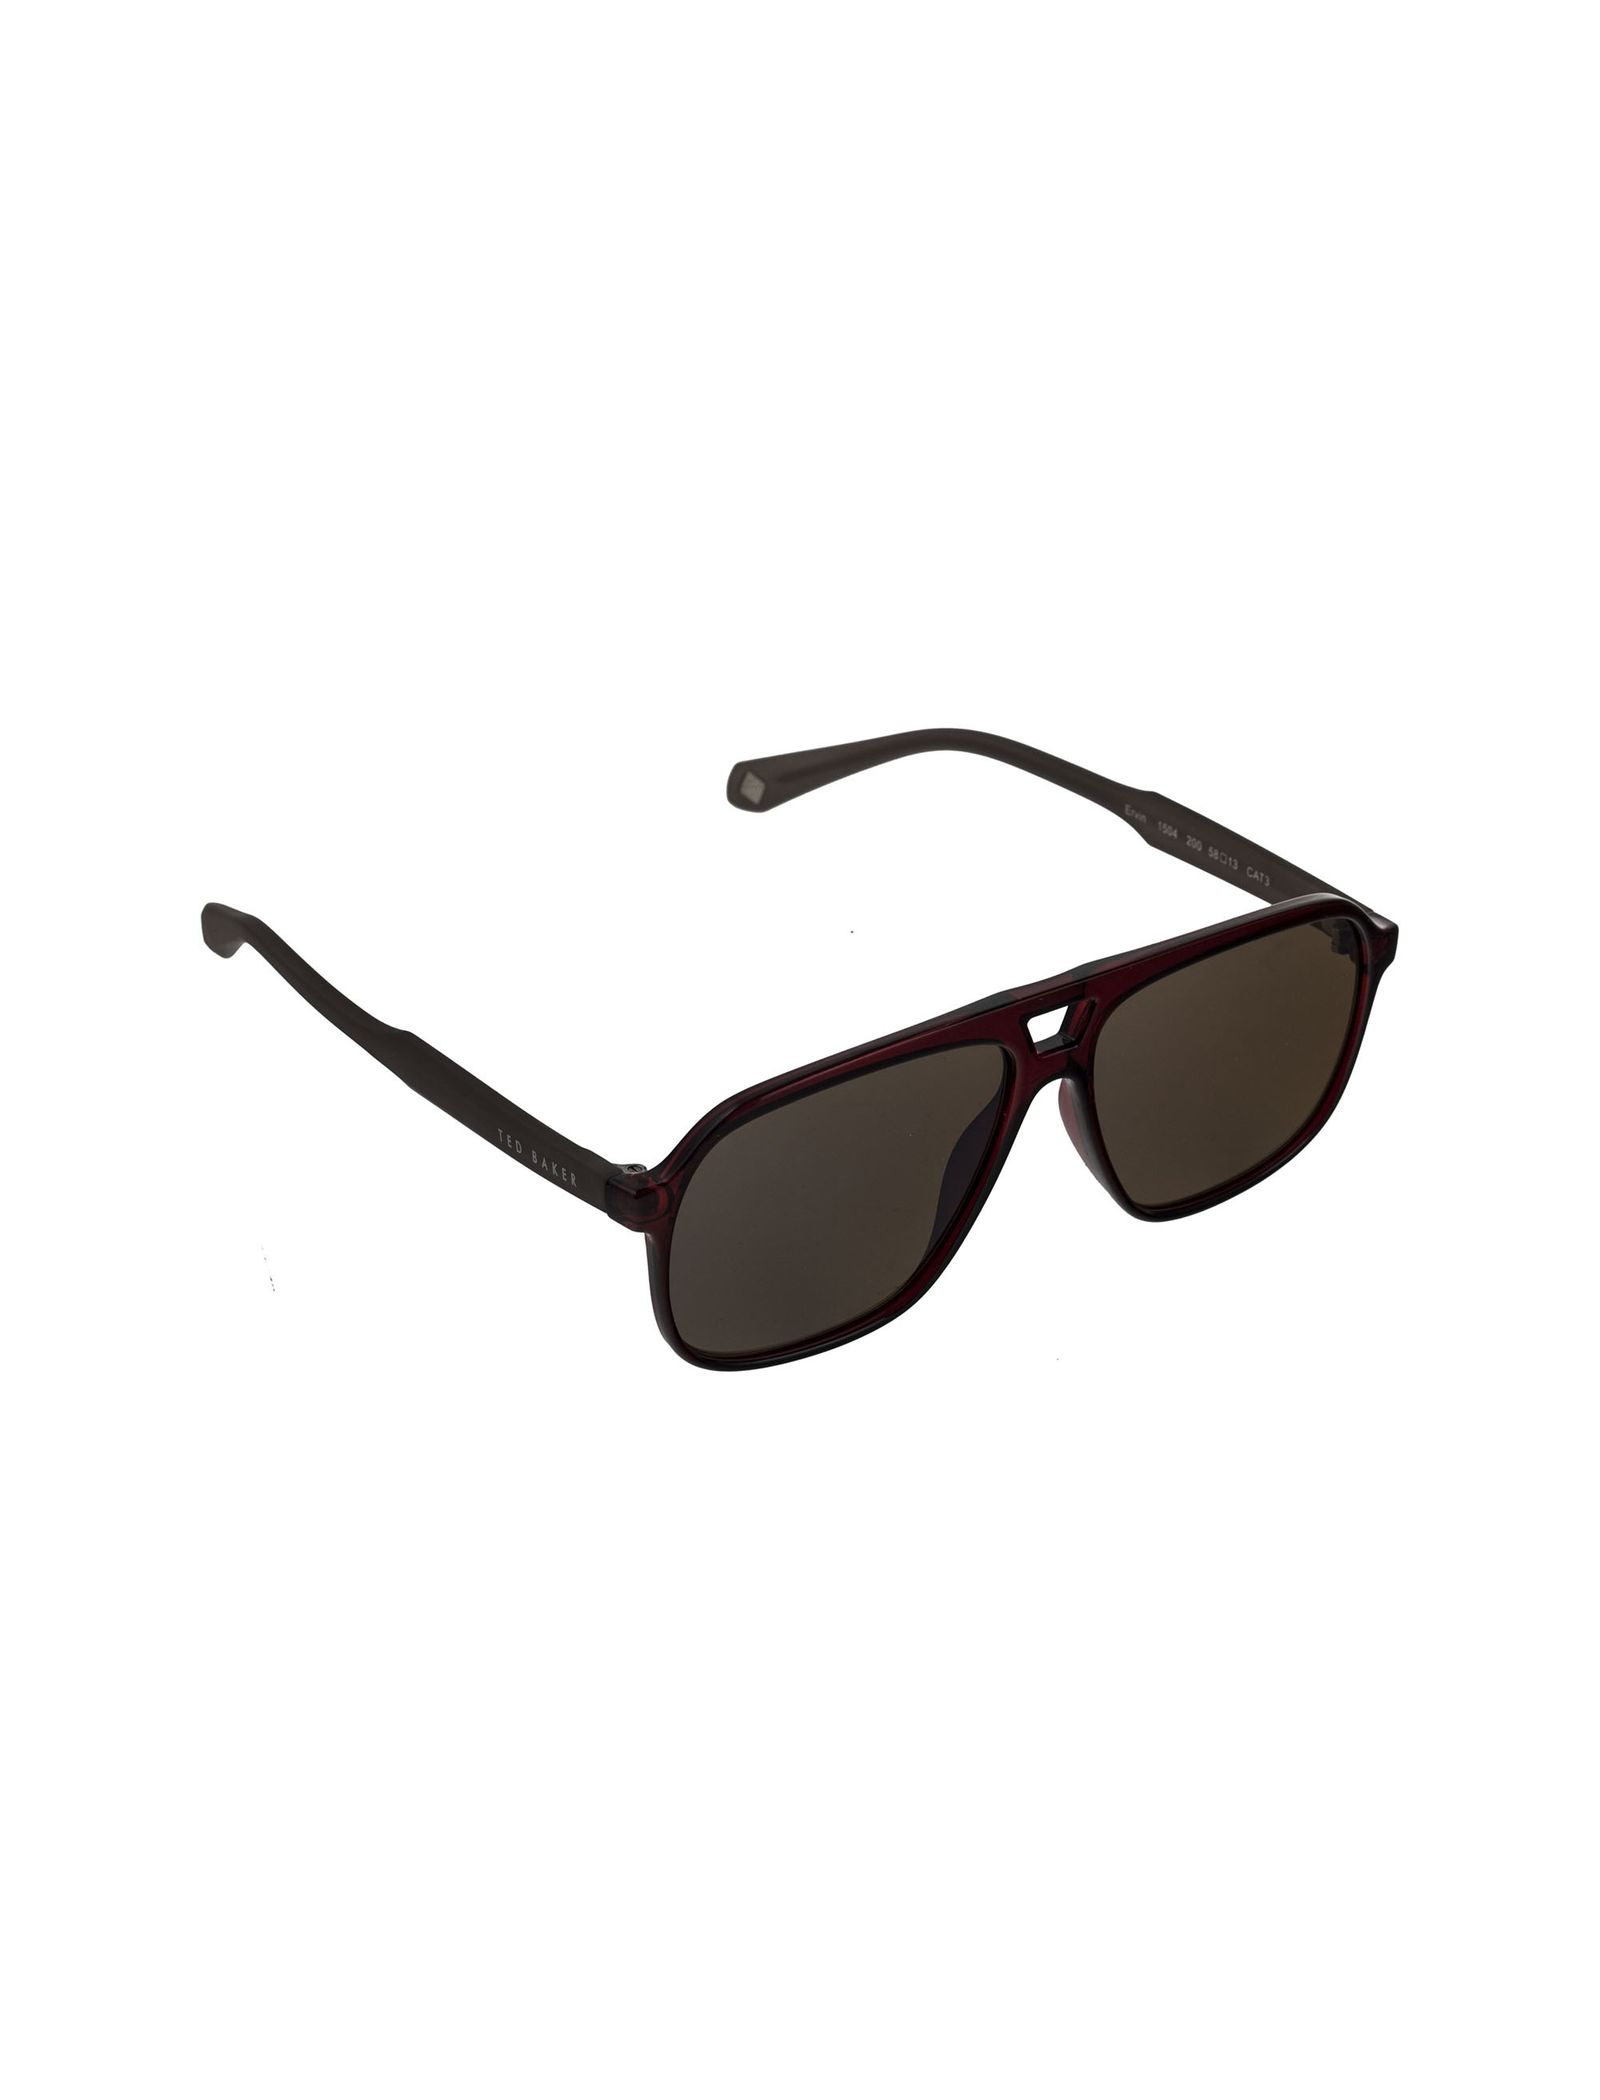 عینک آفتابی زنانه تد بیکر مدل TB150420058 - قهوه ای - 3